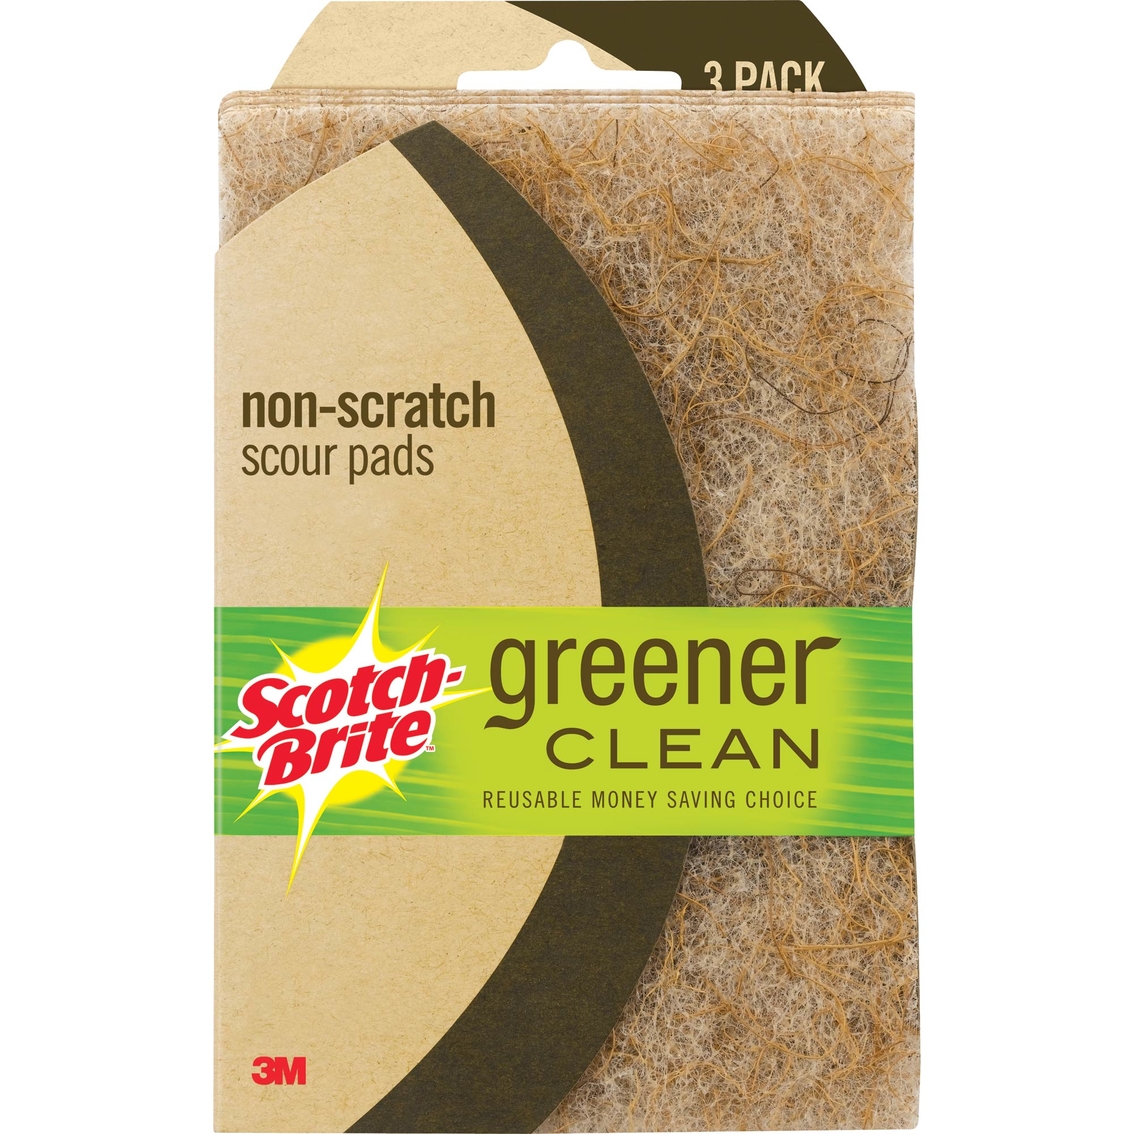 Scotch-brite Greener Clean Non-scratch Scour Pads 3 Pk. | Cleaning ...